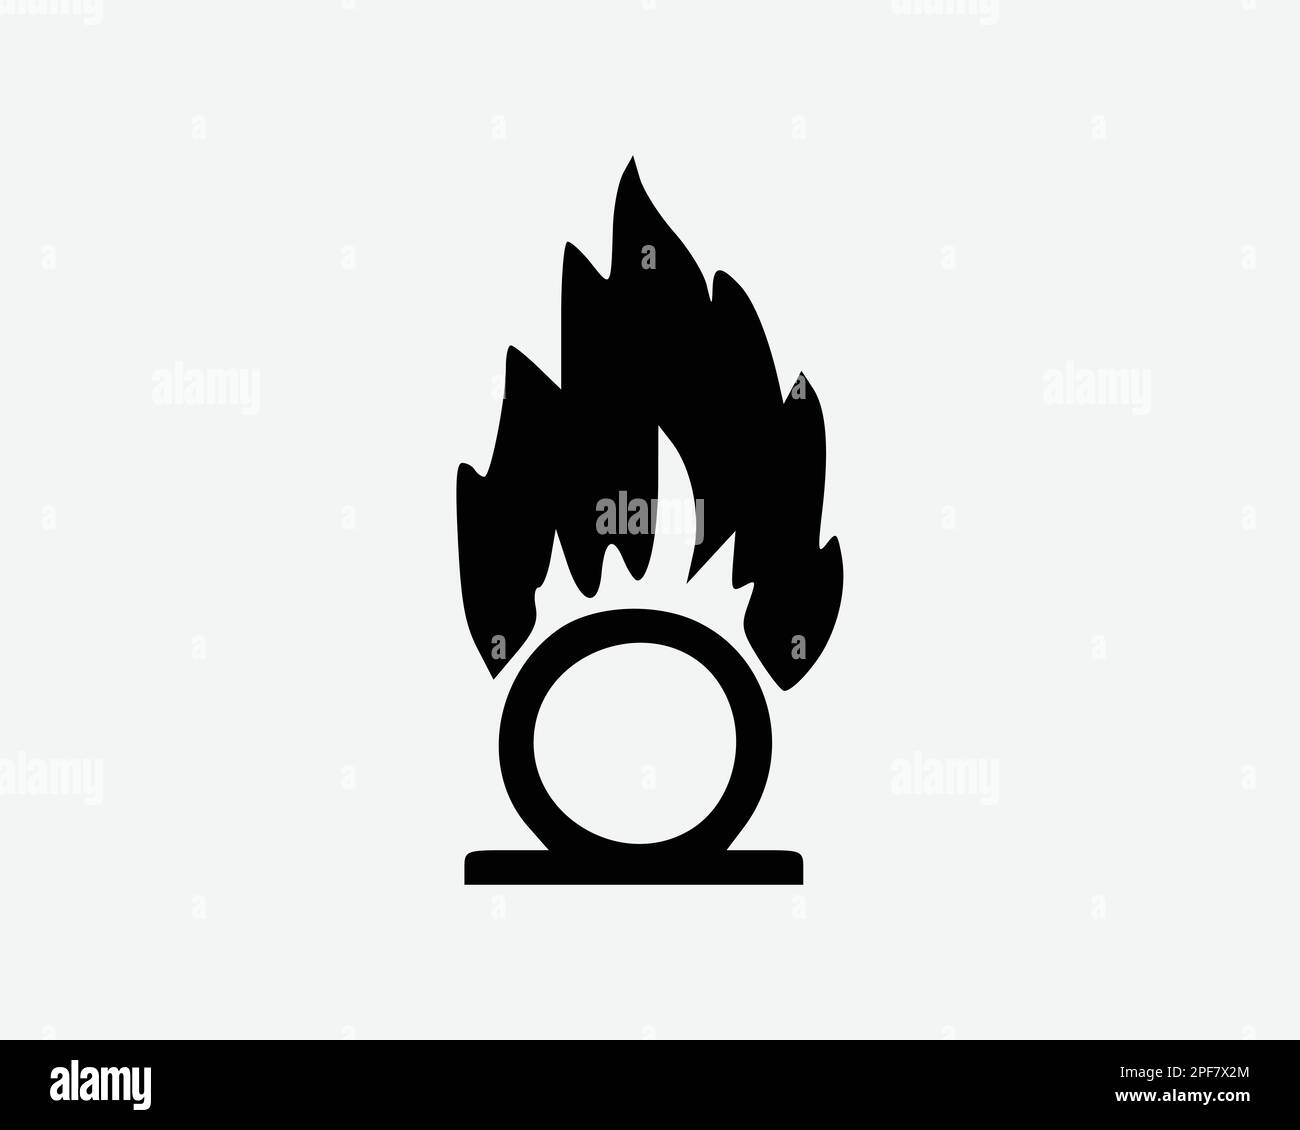 Icona Fireball fuoco sfera bruciare elemento energia potenza Black White Silhouette simbolo segno grafico clipart Illustrazione pittogramma vettore Illustrazione Vettoriale